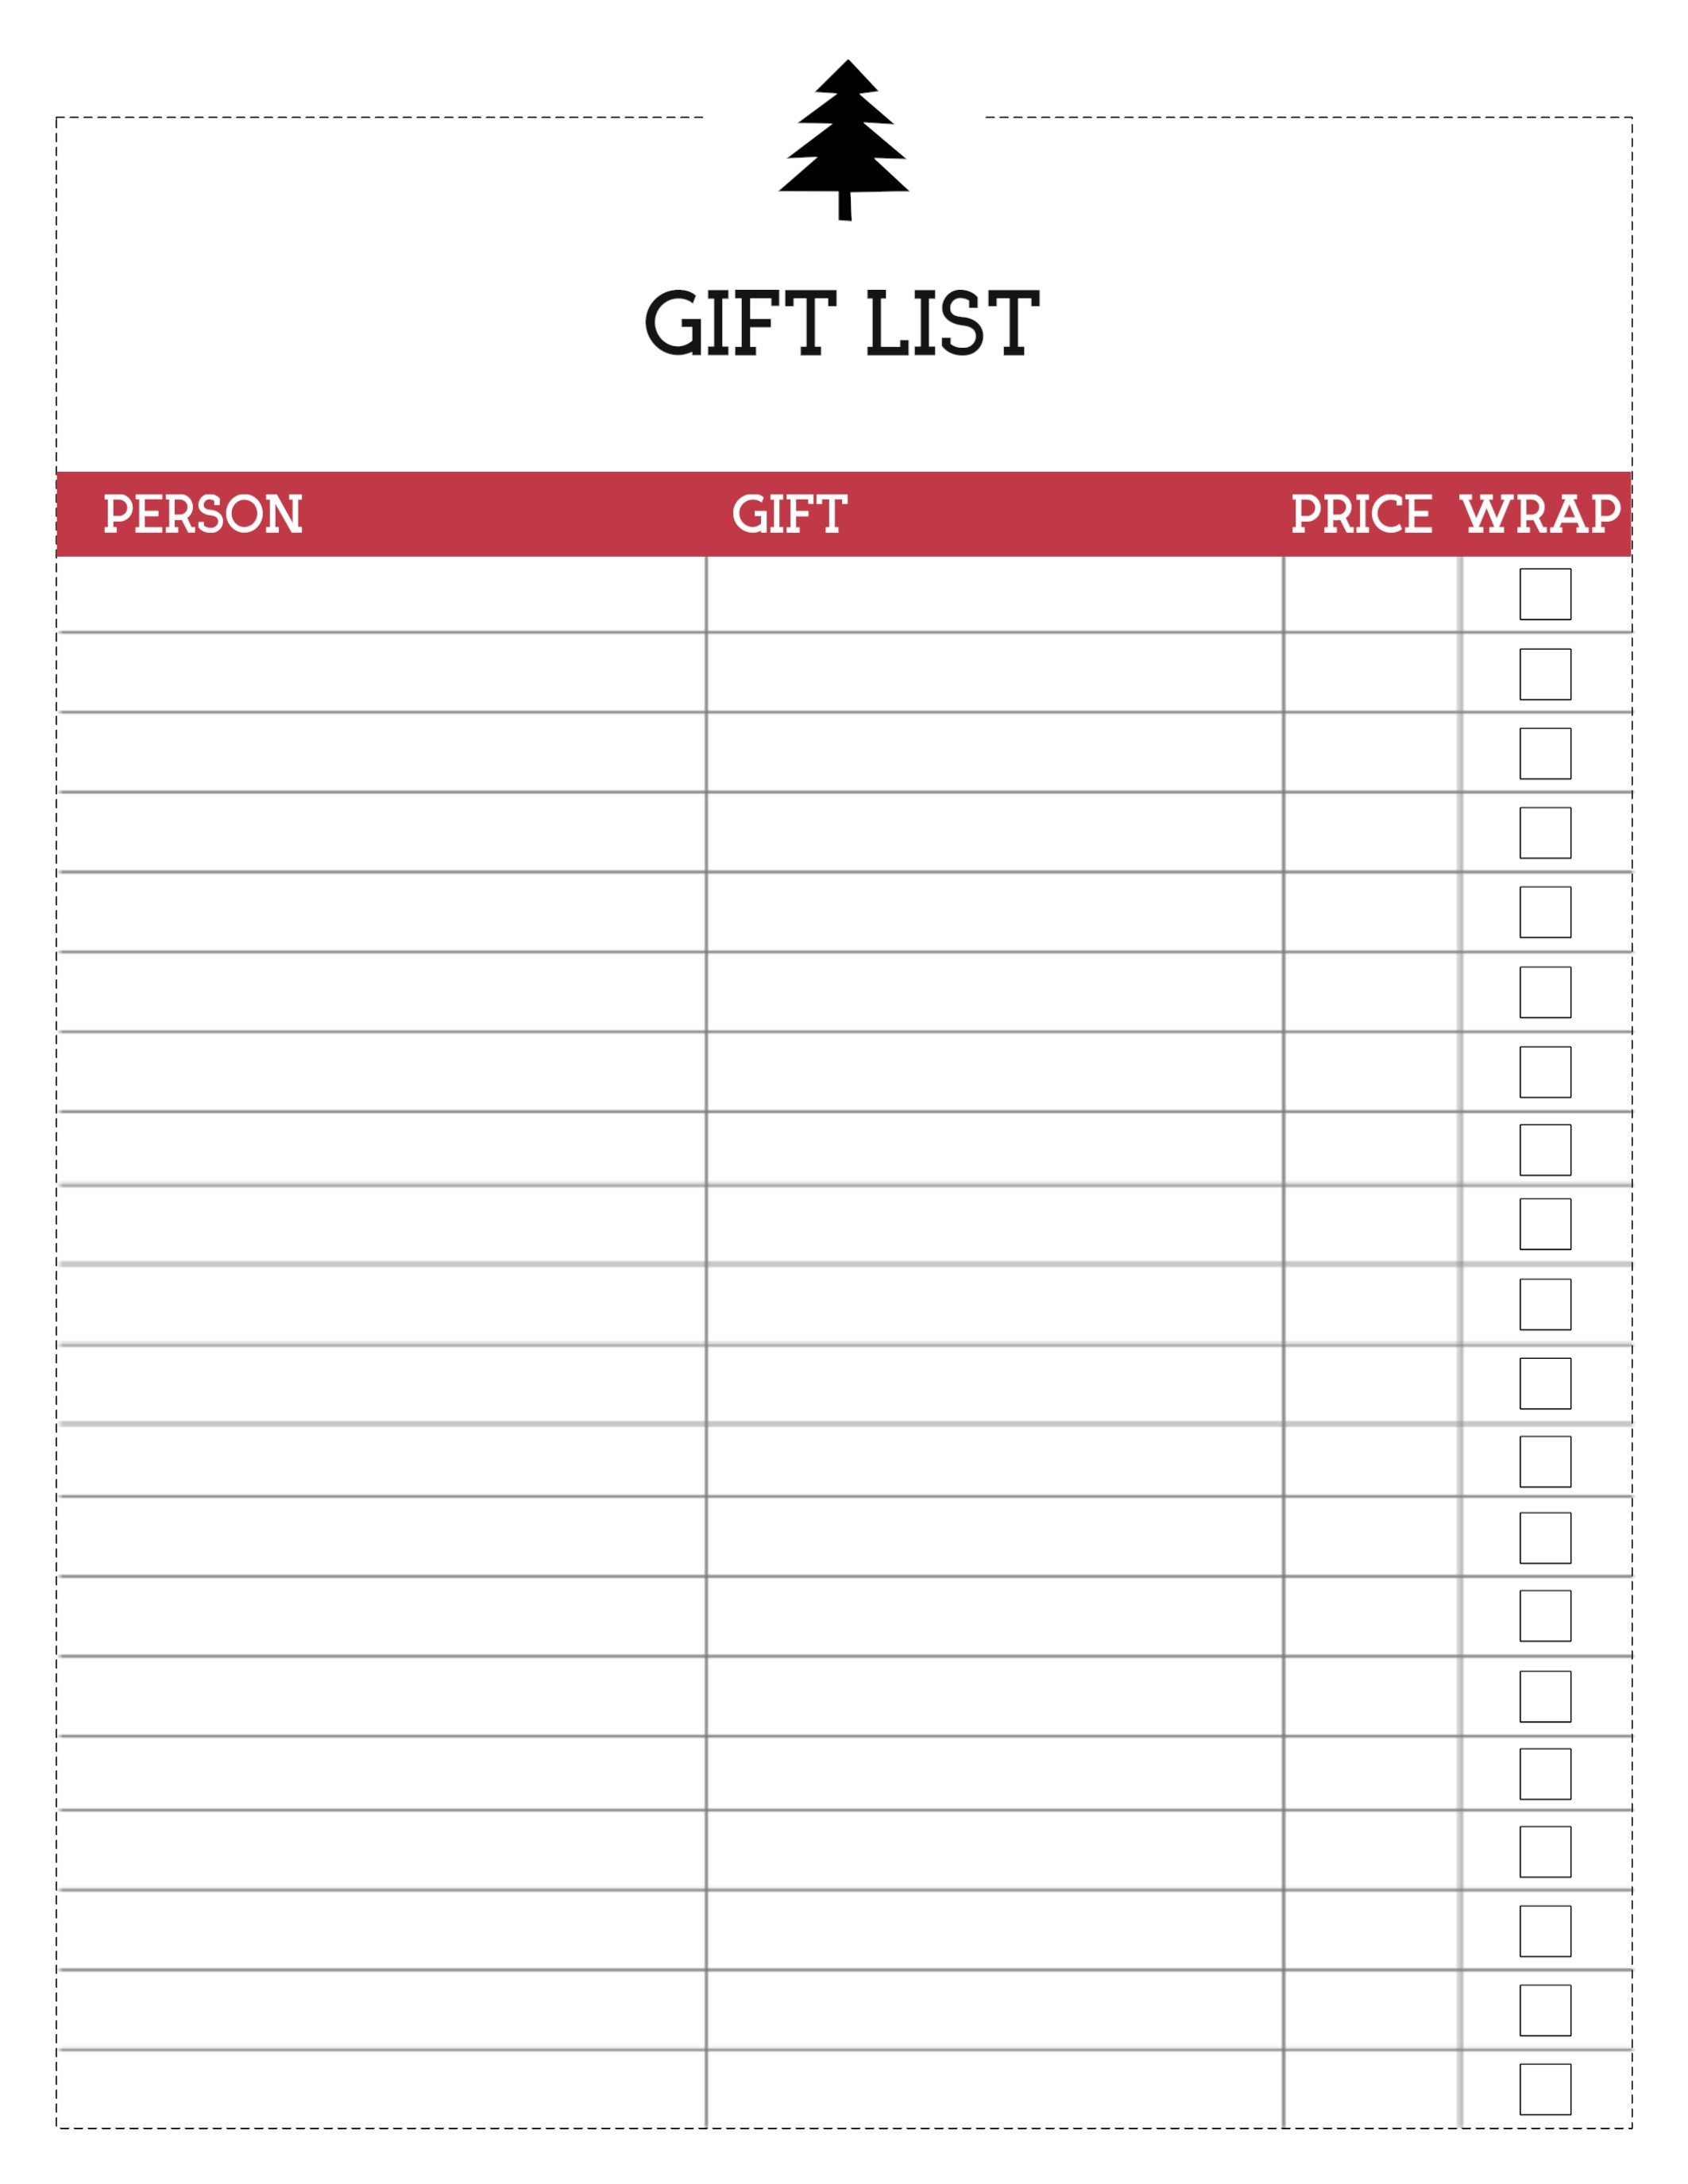 Free Printable Christmas List Template {Gift List} - Paper Trail Design - Free Printable Gift List